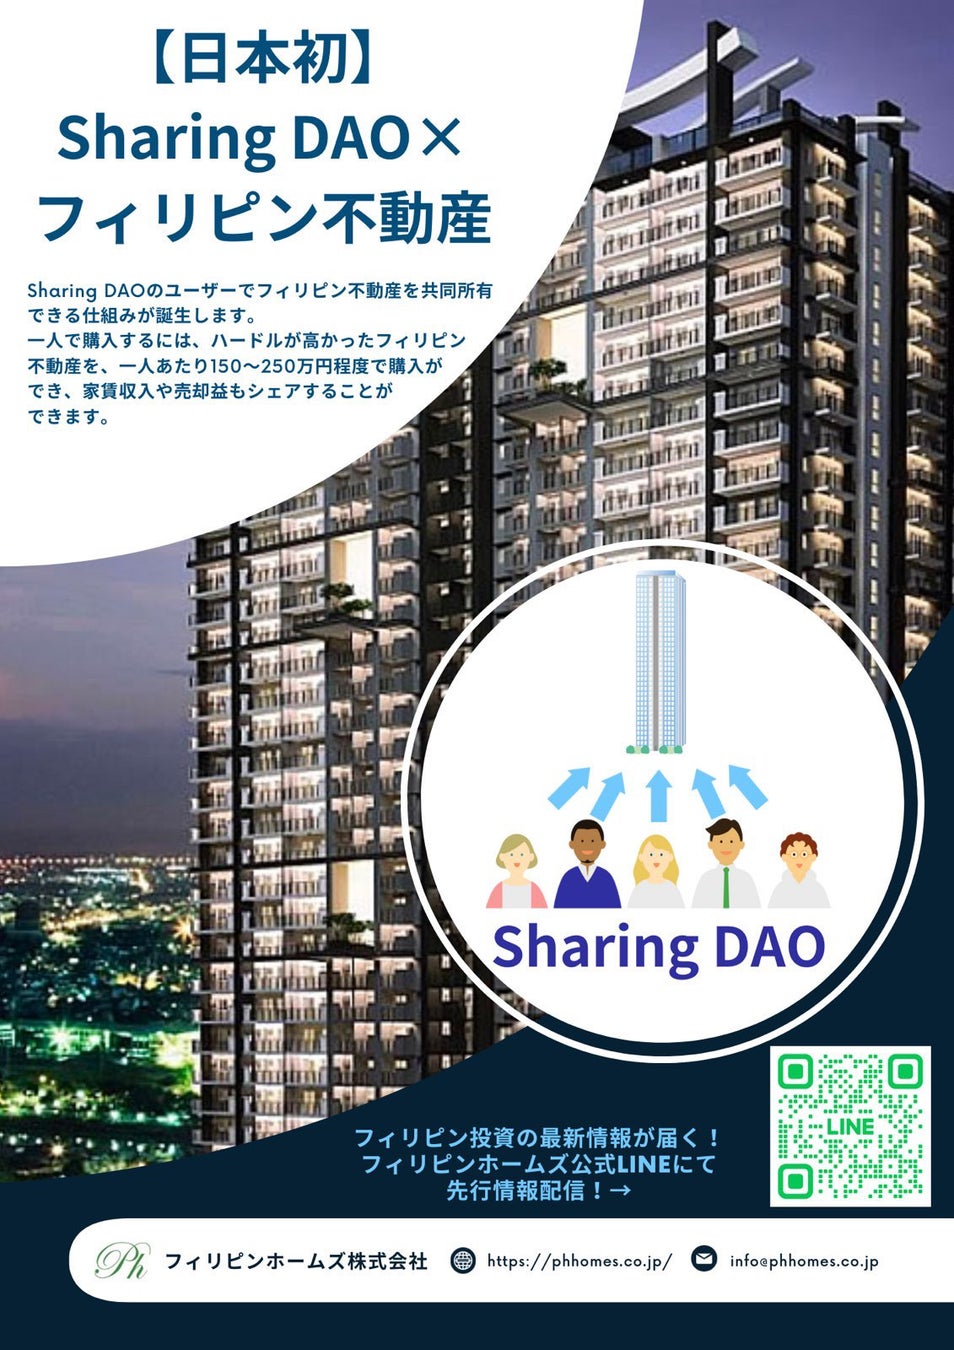 フィリピンホームズ株式会社、DAO（分散型自律組織）を活用した『Sharing DAO』による不動産購入サービスを提供開始のサブ画像2